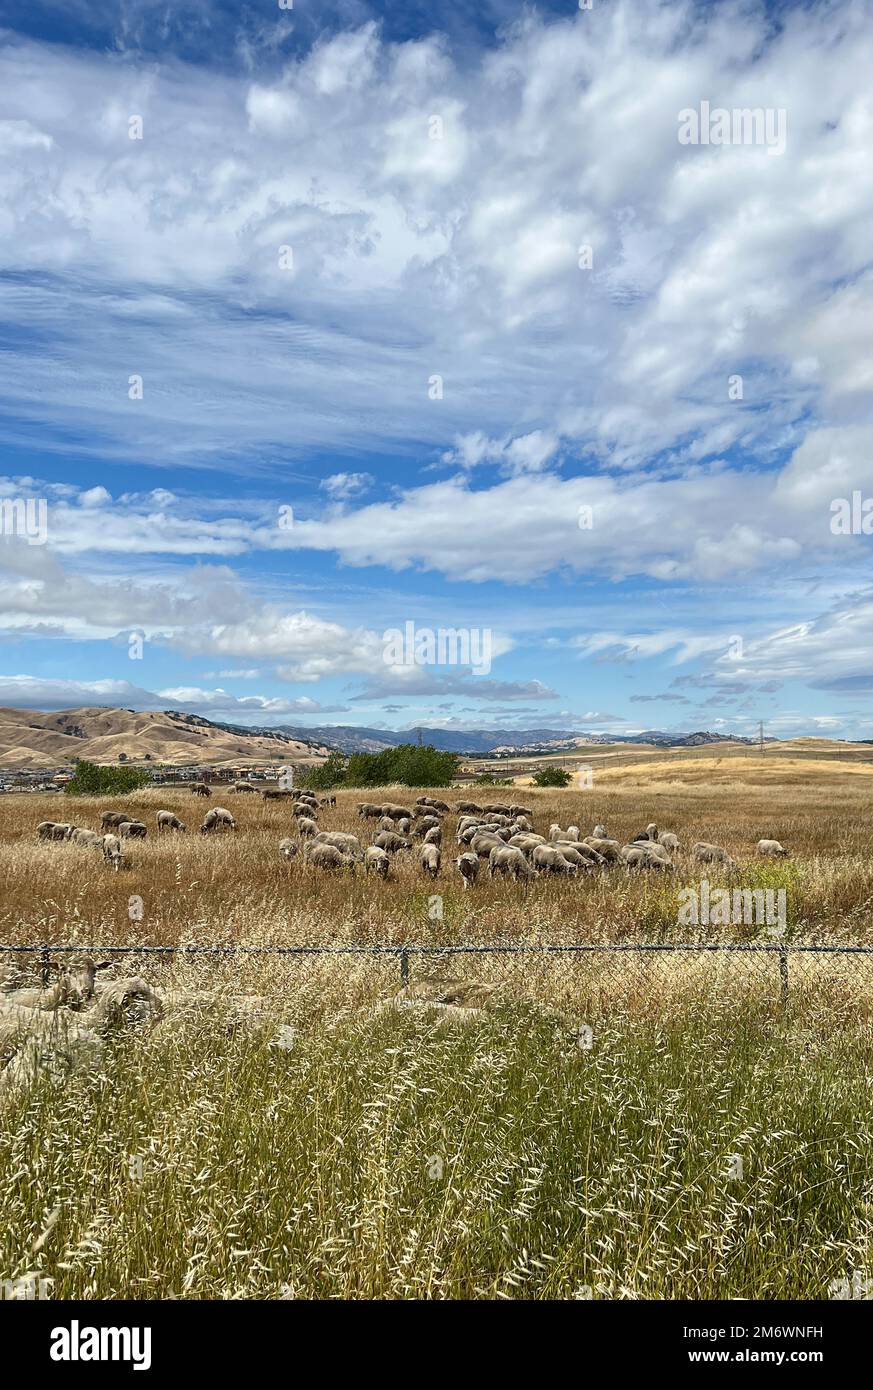 Schafe grasen auf einem Feld am Luftwaffenstützpunkt Travis, Kalifornien, 6. Mai 2022. Die Herde von etwa 1.000 Schafen wurde freigelassen, um überwuchertes Unkraut zu beseitigen, ohne dass Herbizide und Maschinen erforderlich waren. Diese Weidemethode spart Zeit und Geld, reduziert Brandgefahren und schützt die Umwelt. Stockfoto